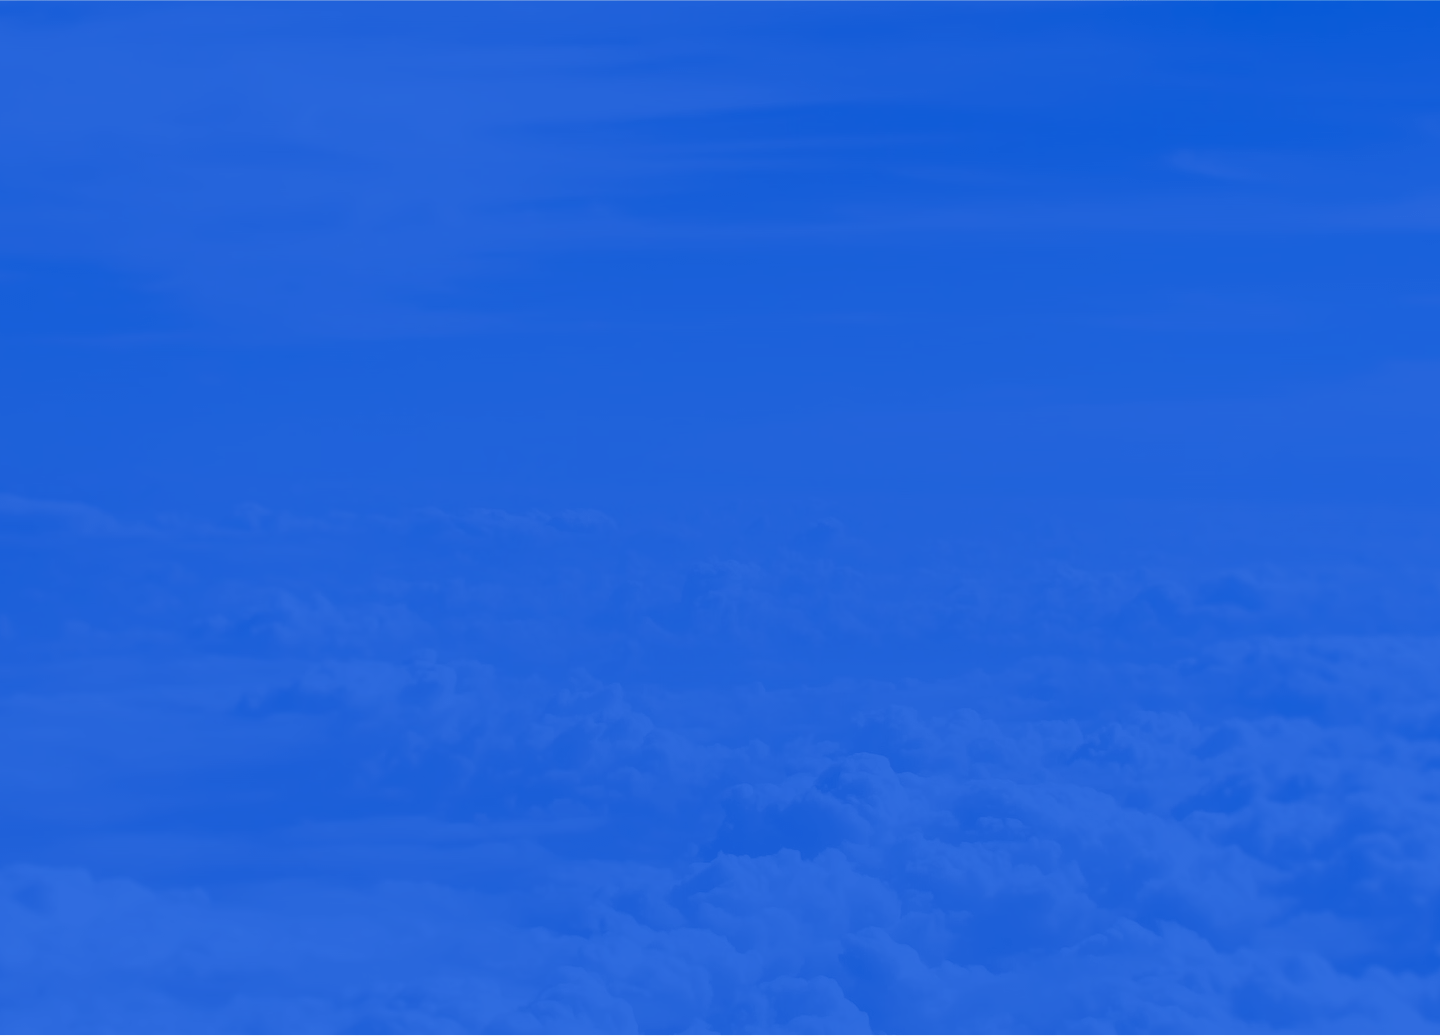 a cloudy sky with a blue overlay